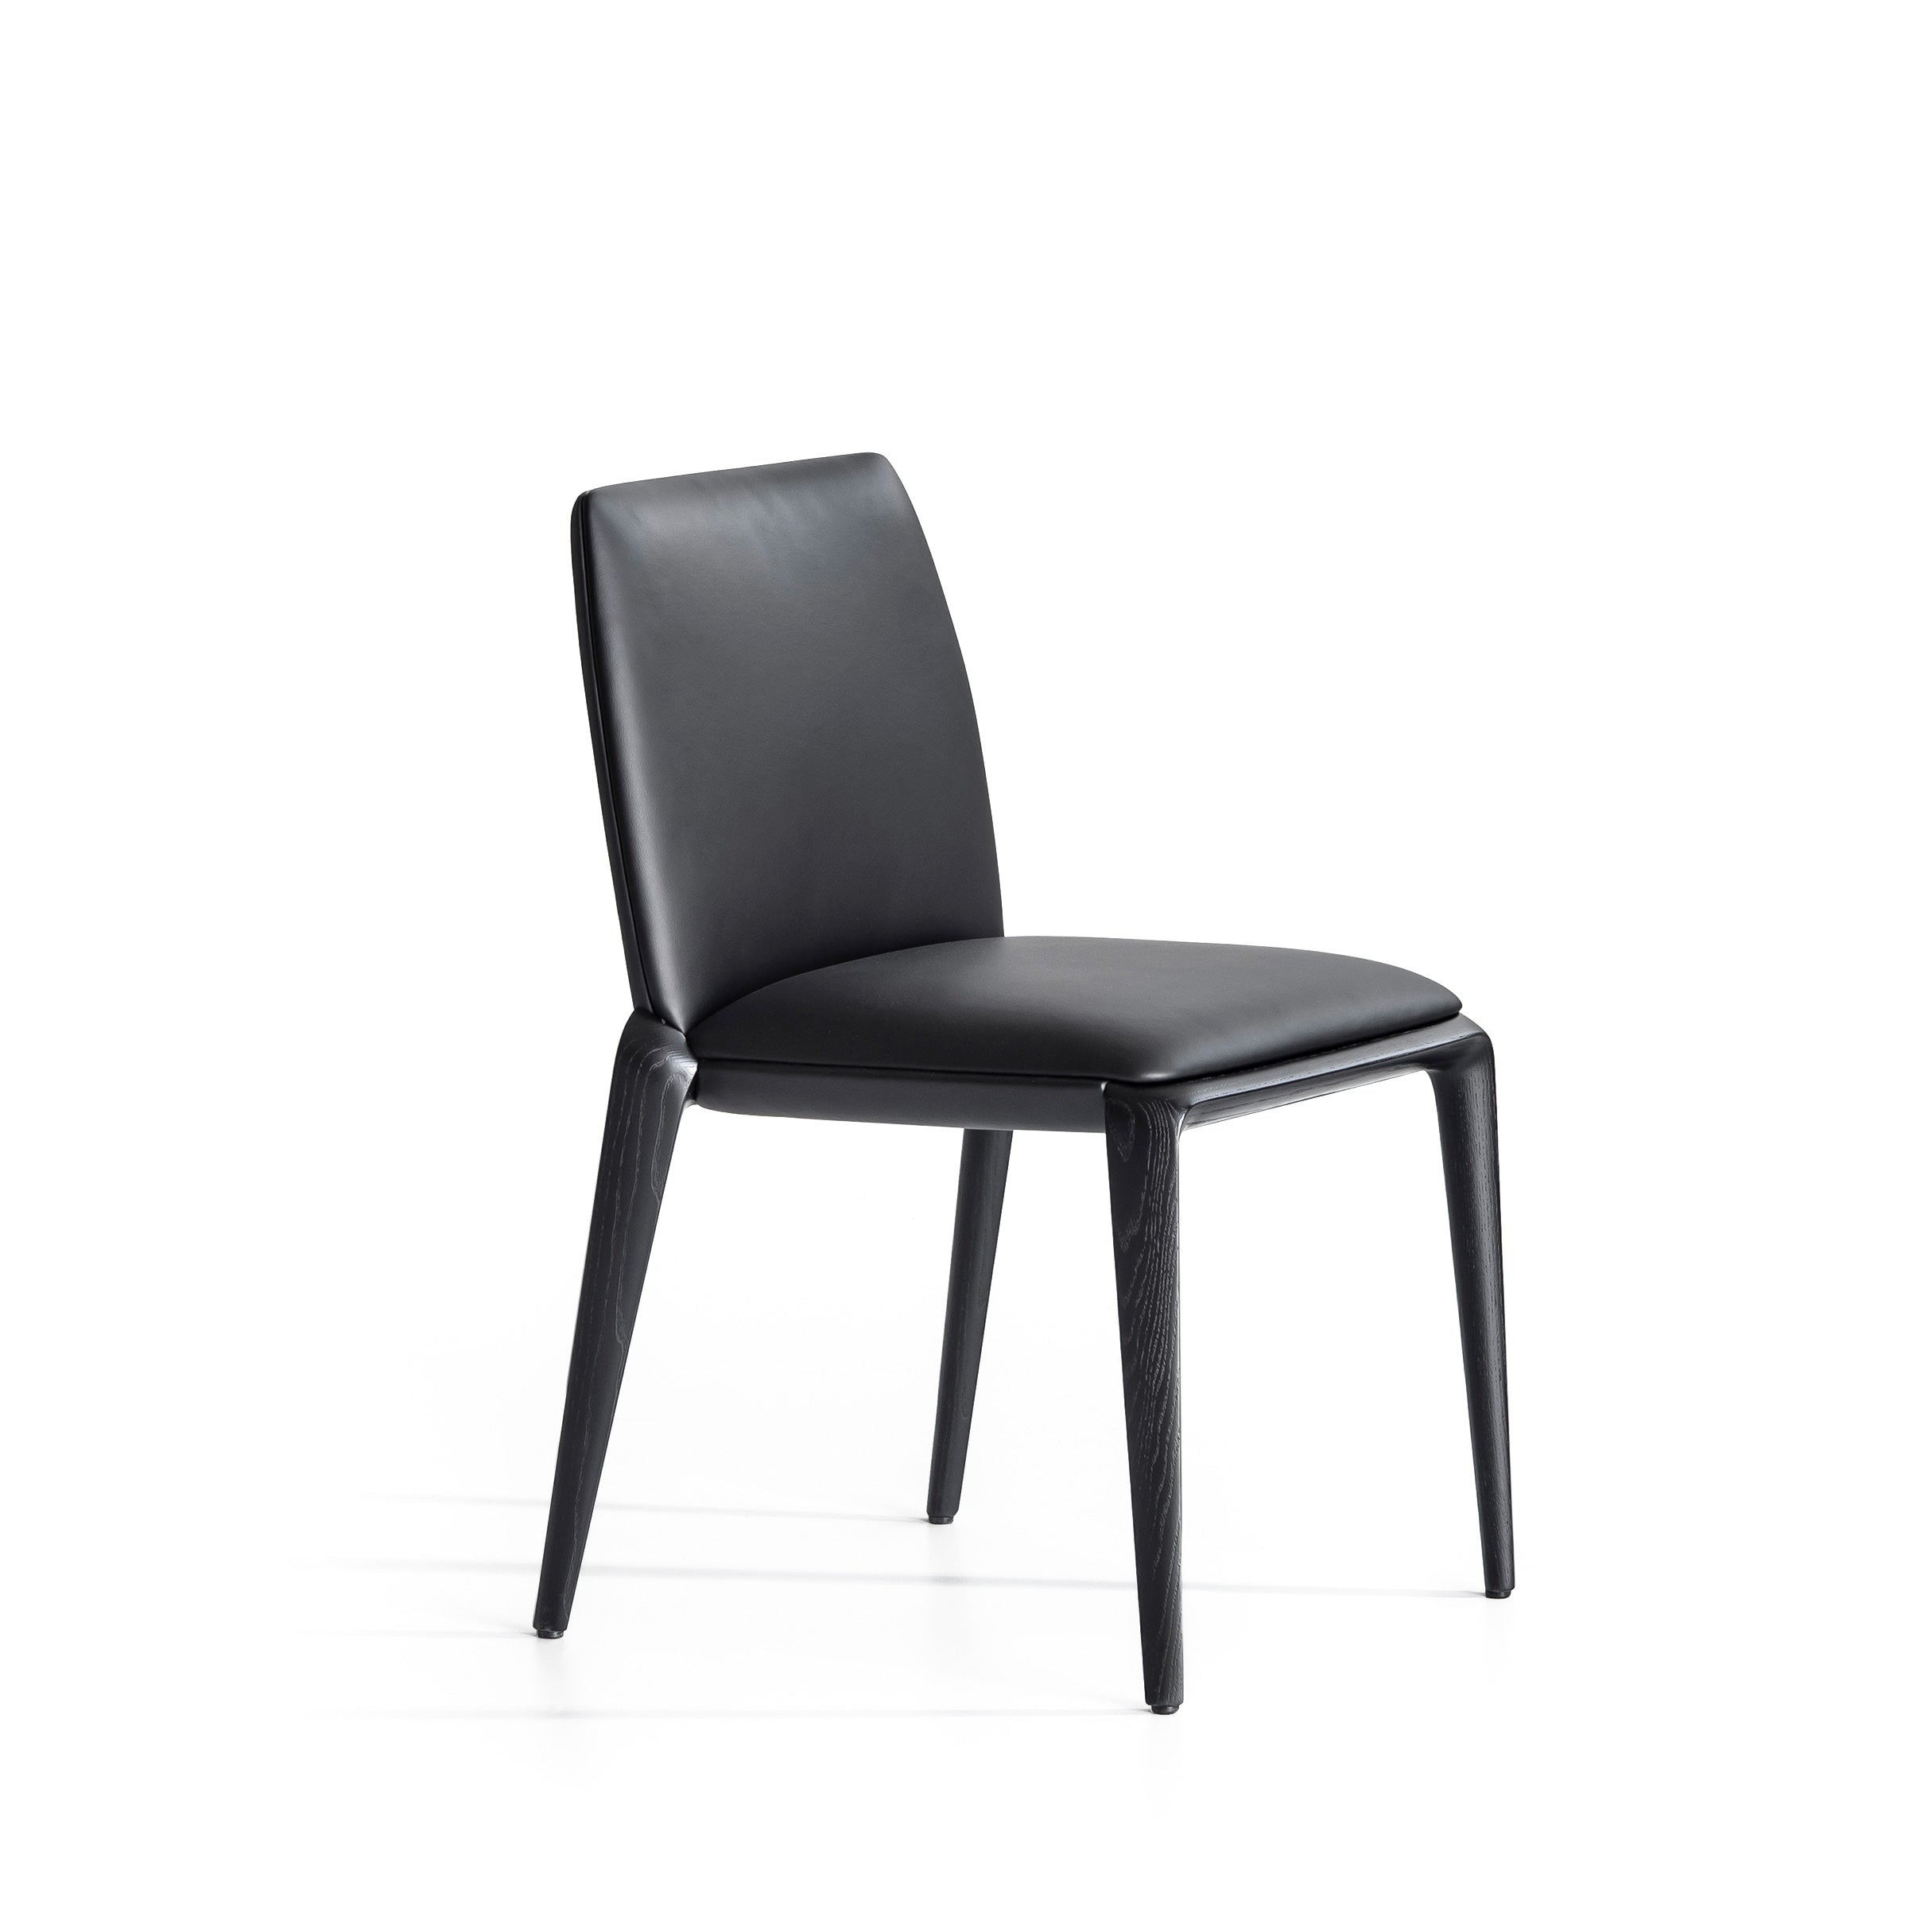 Potocco Hiru Chair 947 – Spencer Interiors